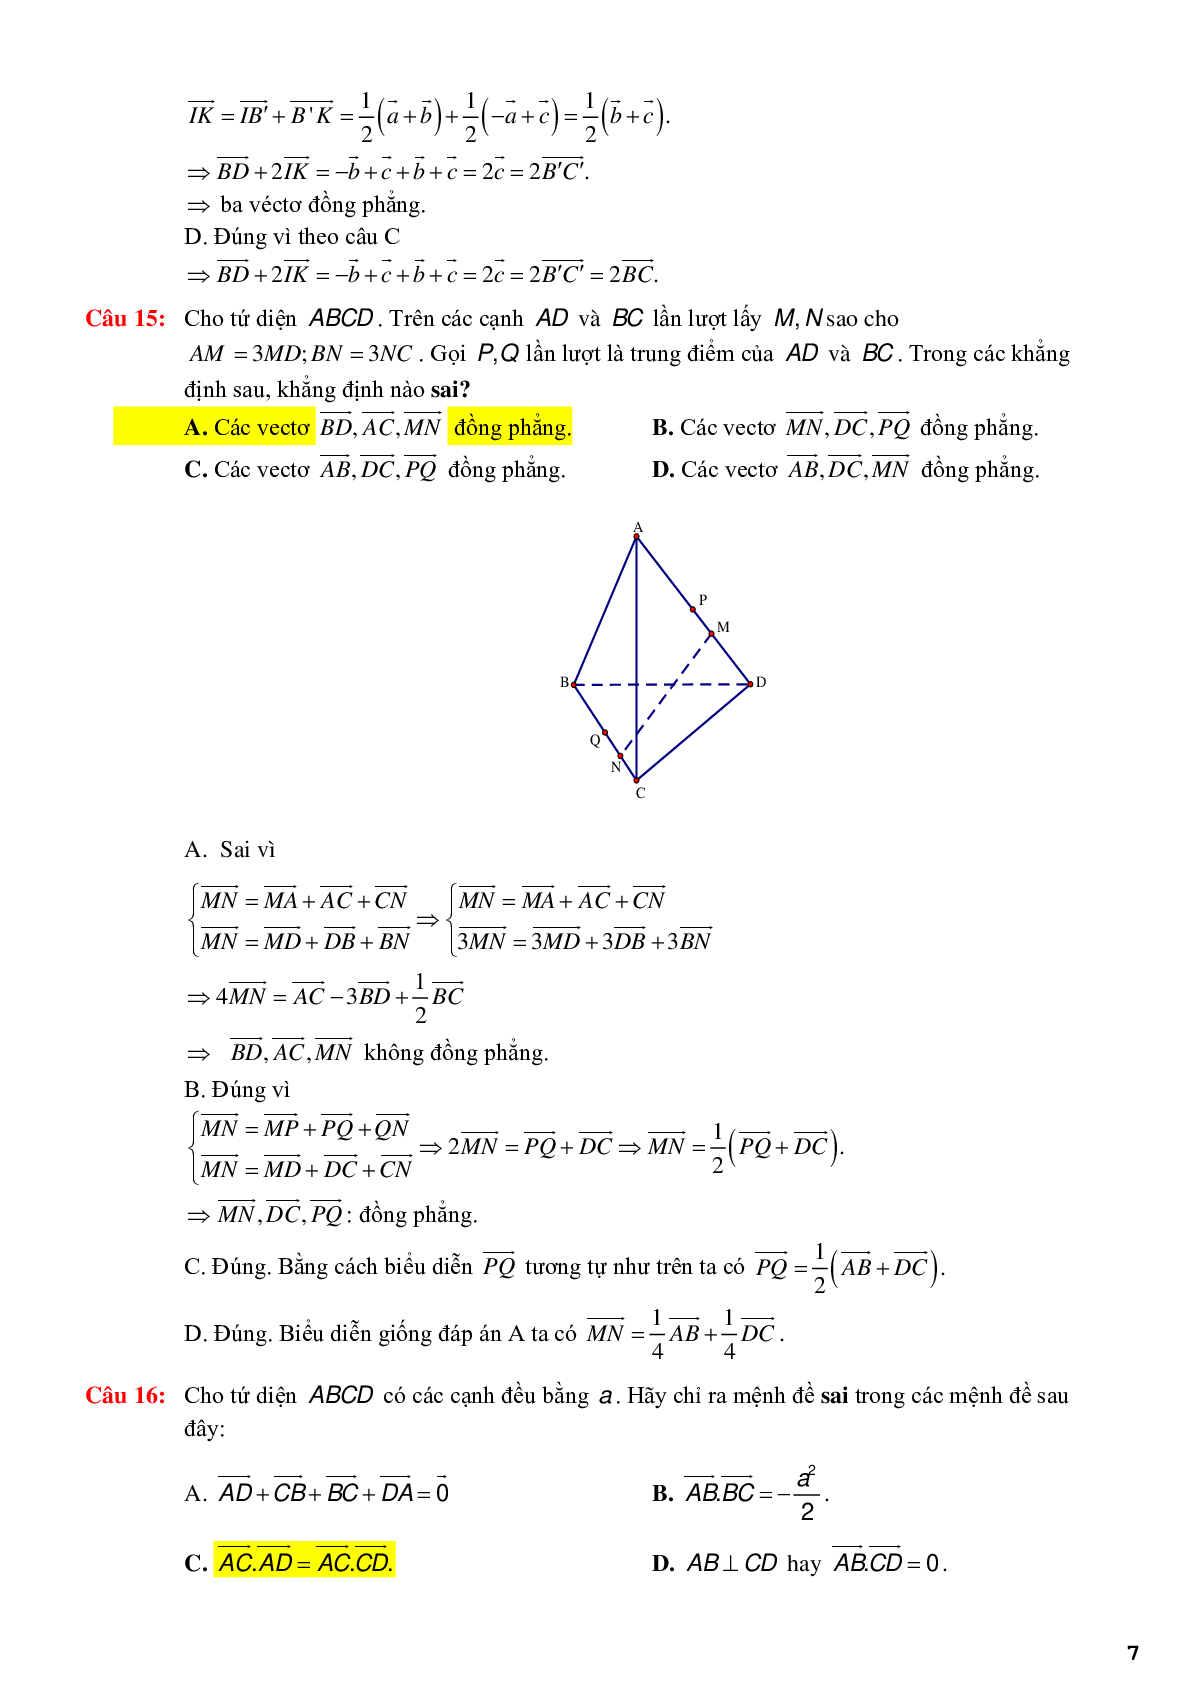 123 bài tập trắc nghiệm quan hệ vuông góc có lời giải chi tiết (trang 7)